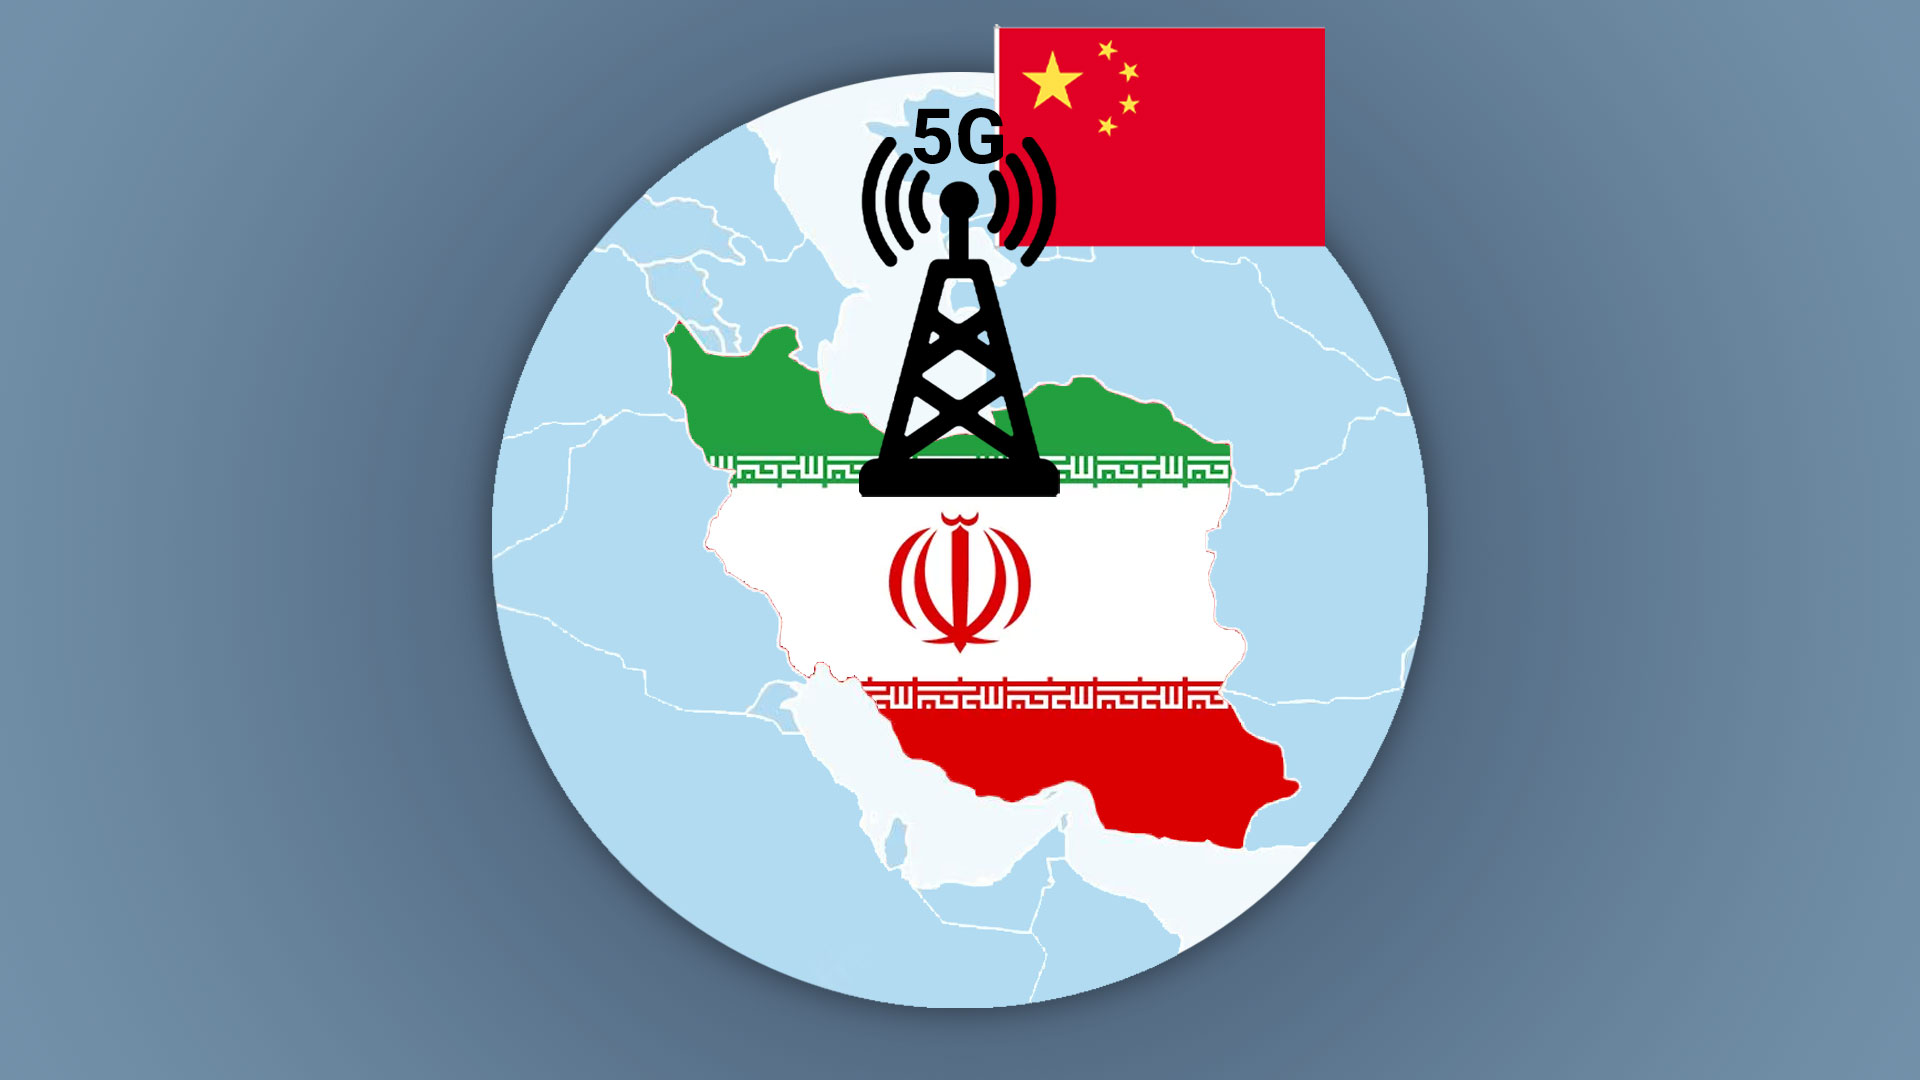 شبکه 5G در ایران با تجهیزات چینی